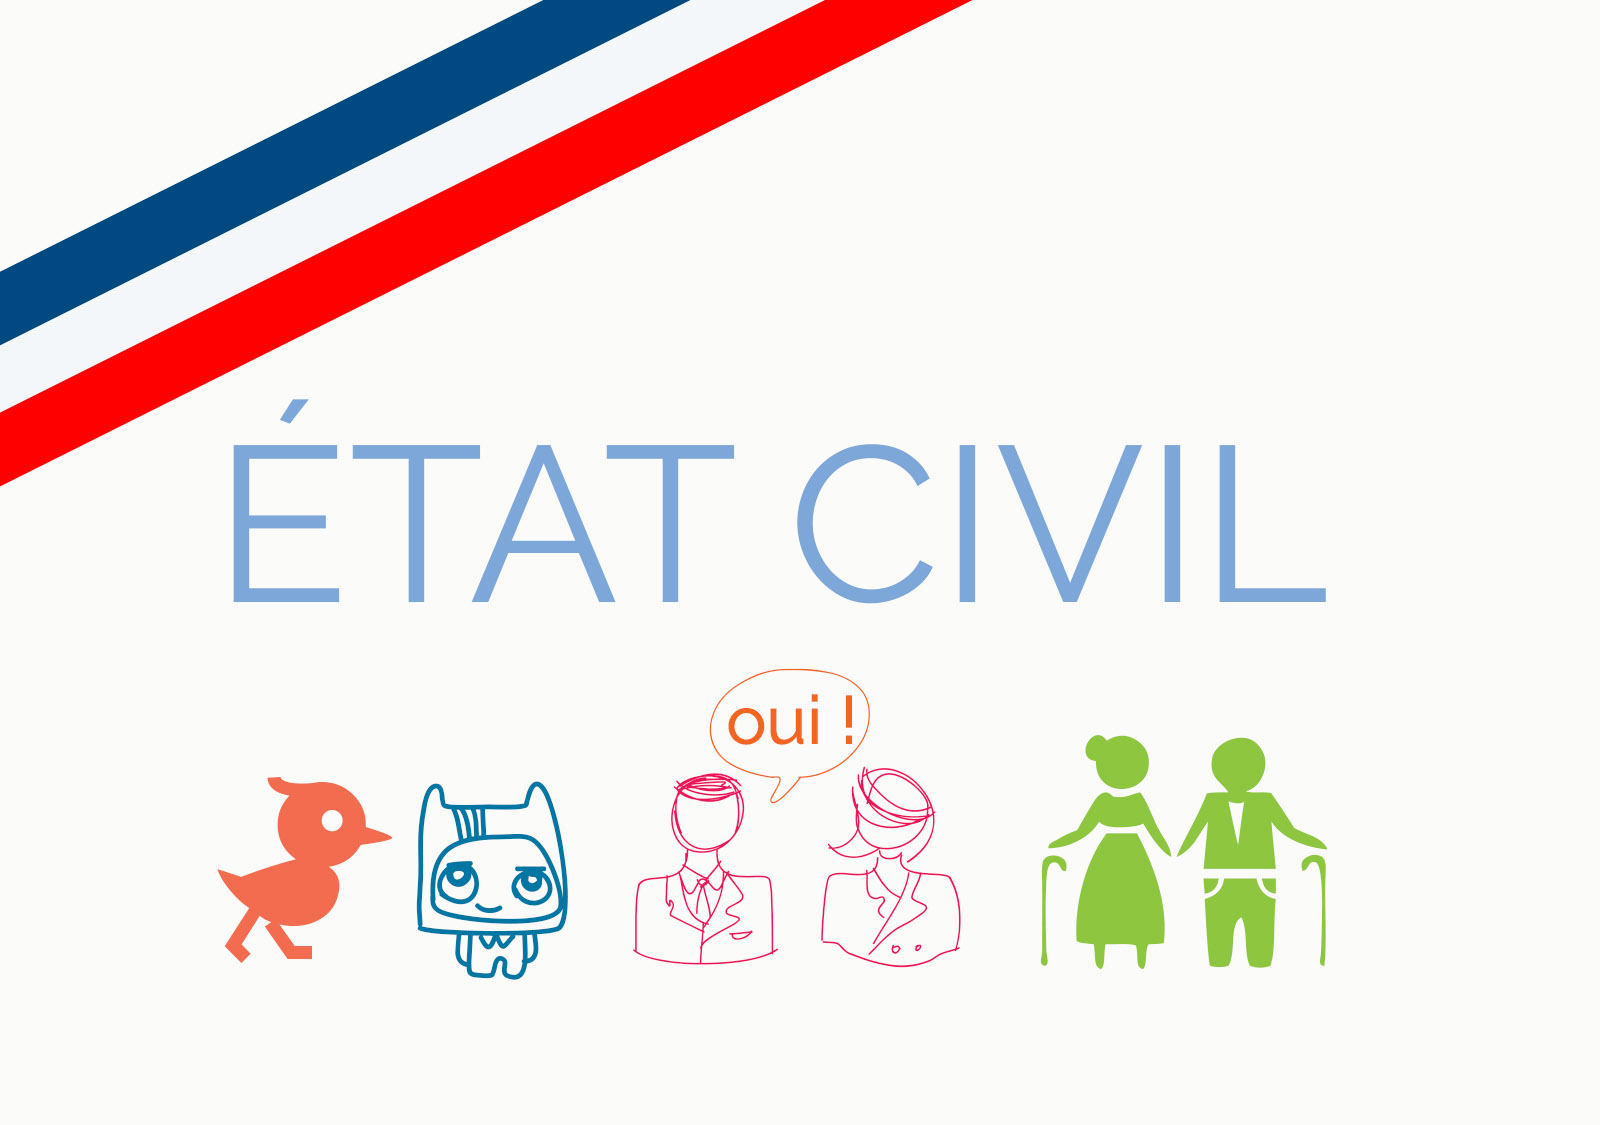 Etat civil : la maire de Rennes souhaite faire lever l'interdiction de certains signes dans les prénoms - Le Monde